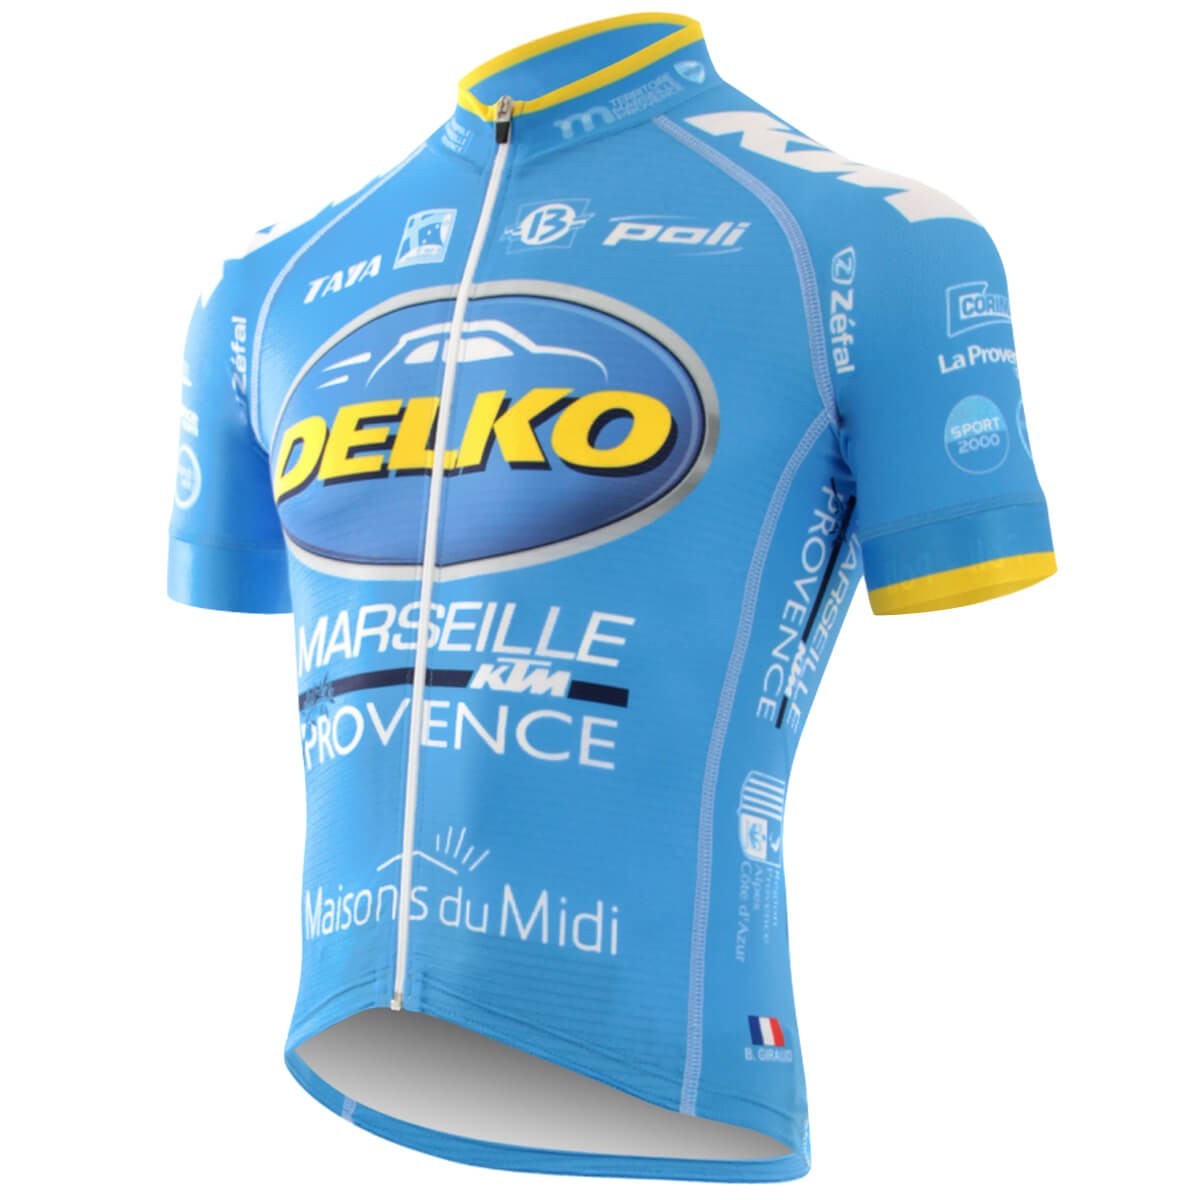 Nouveau maillot de vélo Delko Marseille provence KTM